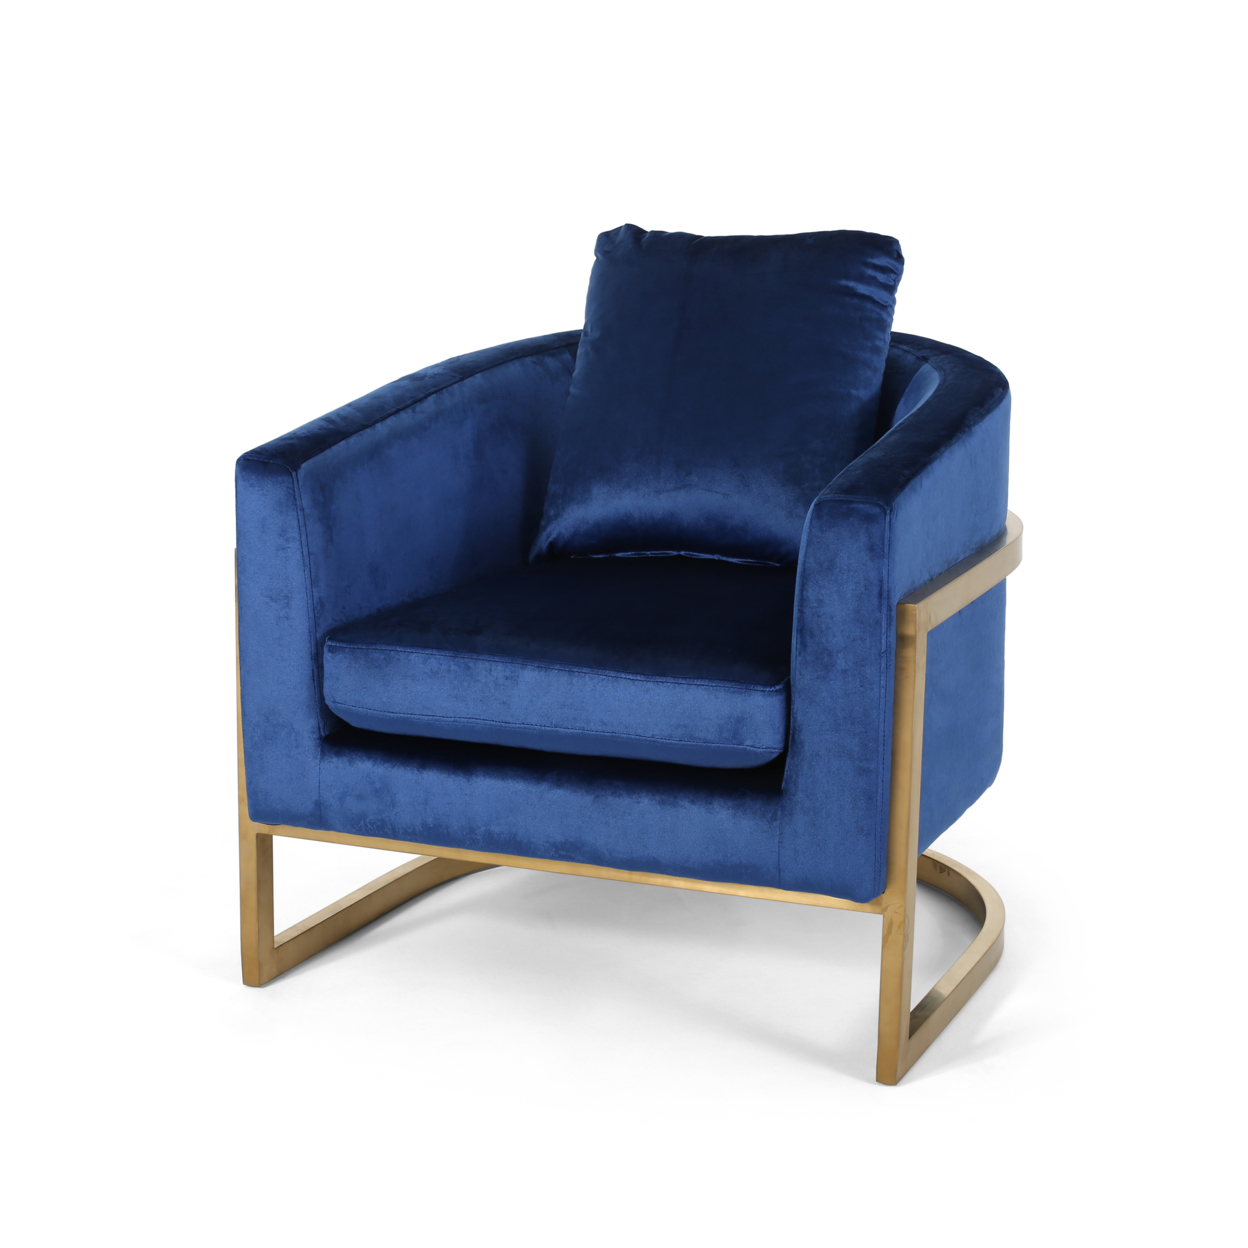 Chloe Modern Velvet Glam Armchair With Stainless Steel Frame - Navy Blue + Gold